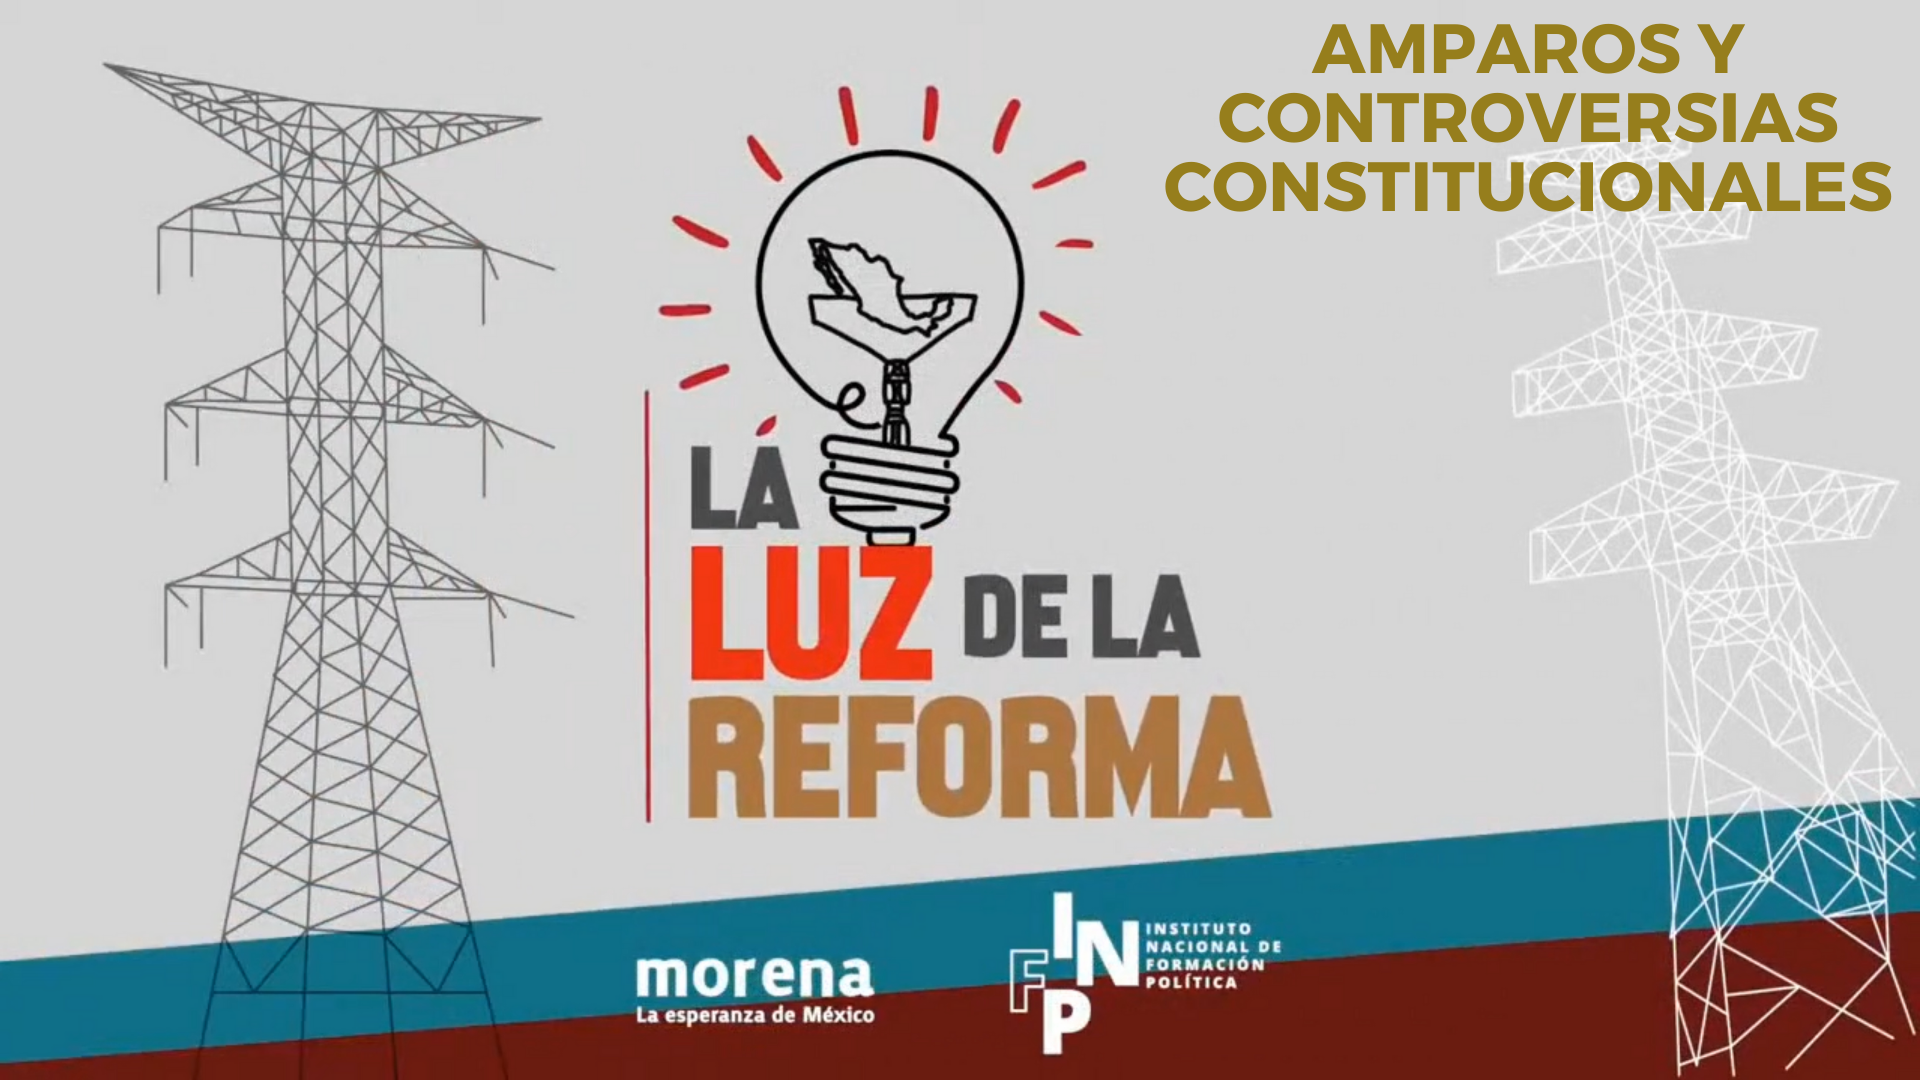 La Luz de la Reforma: Amparos y Controversias Constitucionales